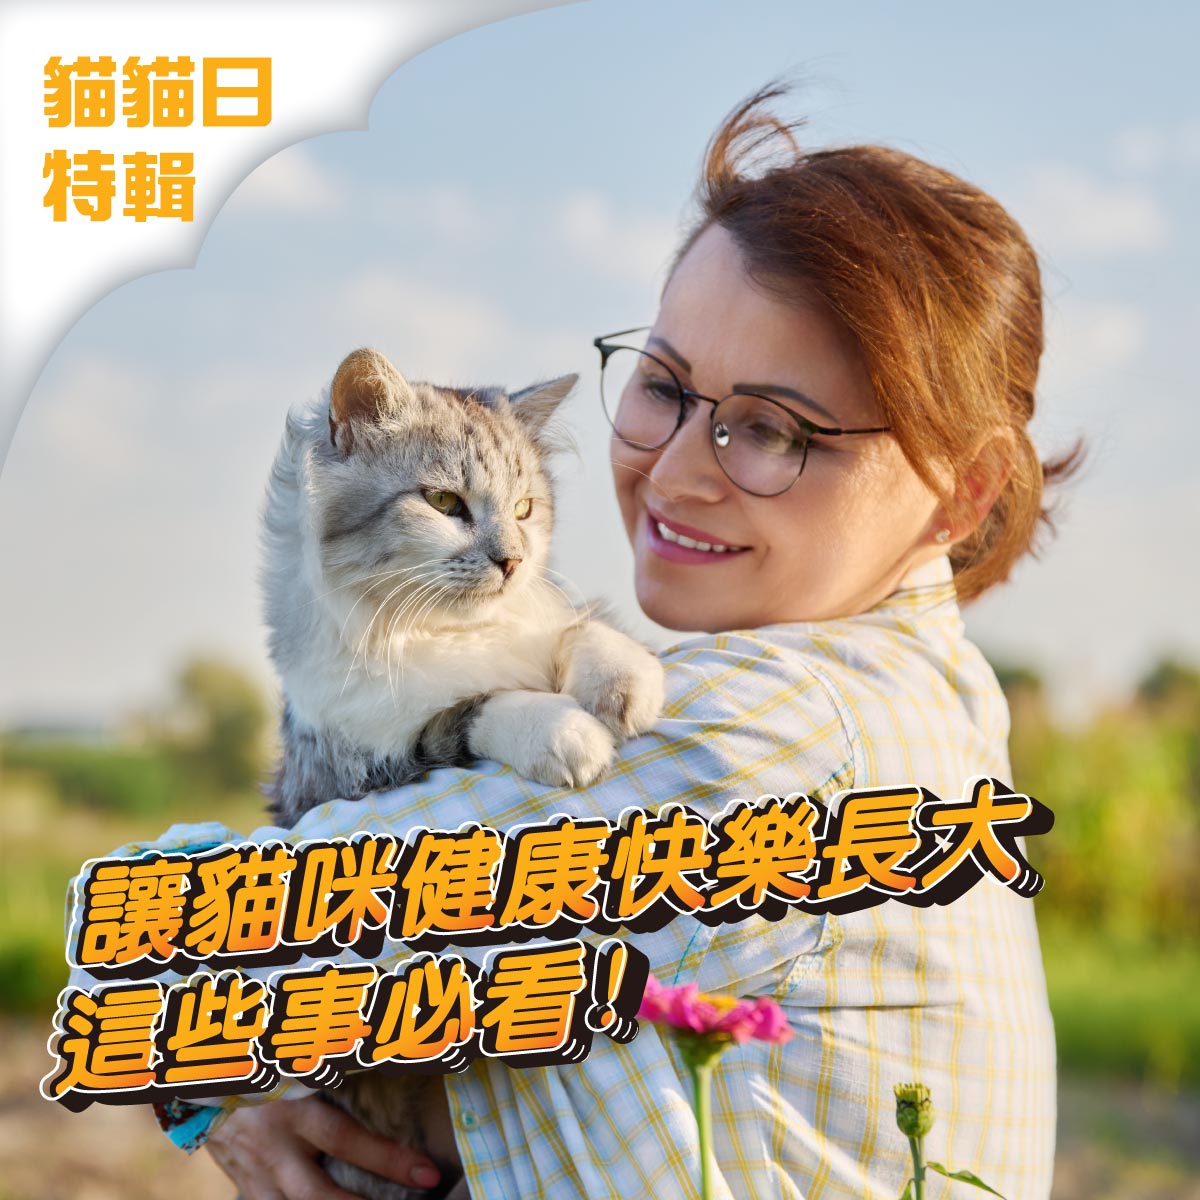 貓貓日特輯在陽光下抱著貓咪的女生,讓貓咪健康快樂長大詳見全文